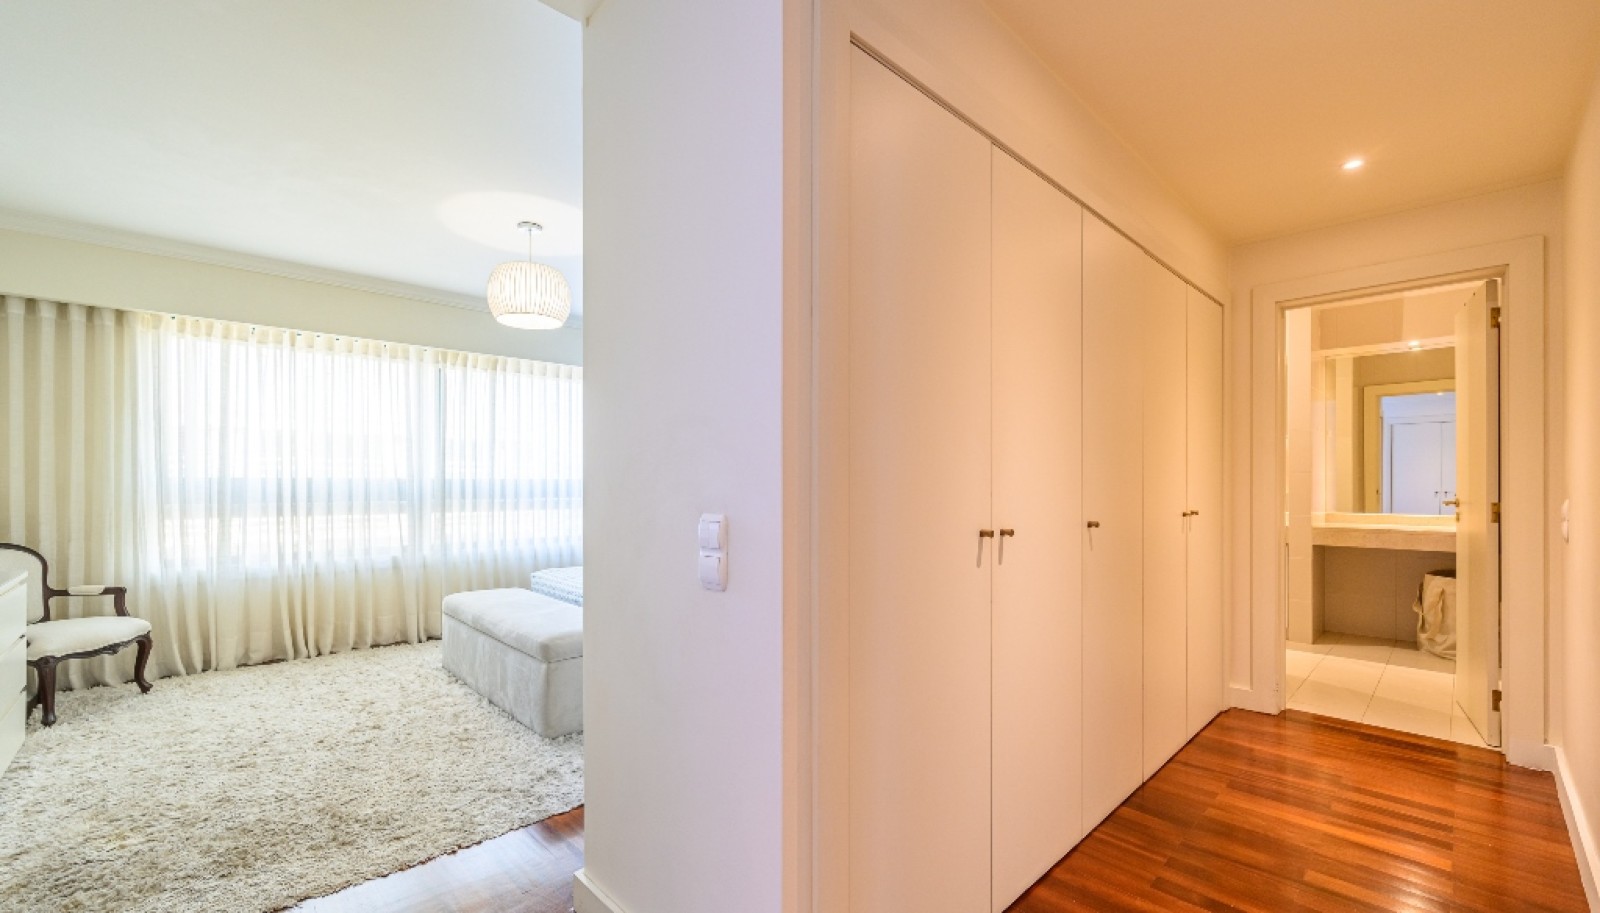 Appartement 3+1 chambres à vendre à Afurada, Vila Nova de Gaia, Portugal_251481